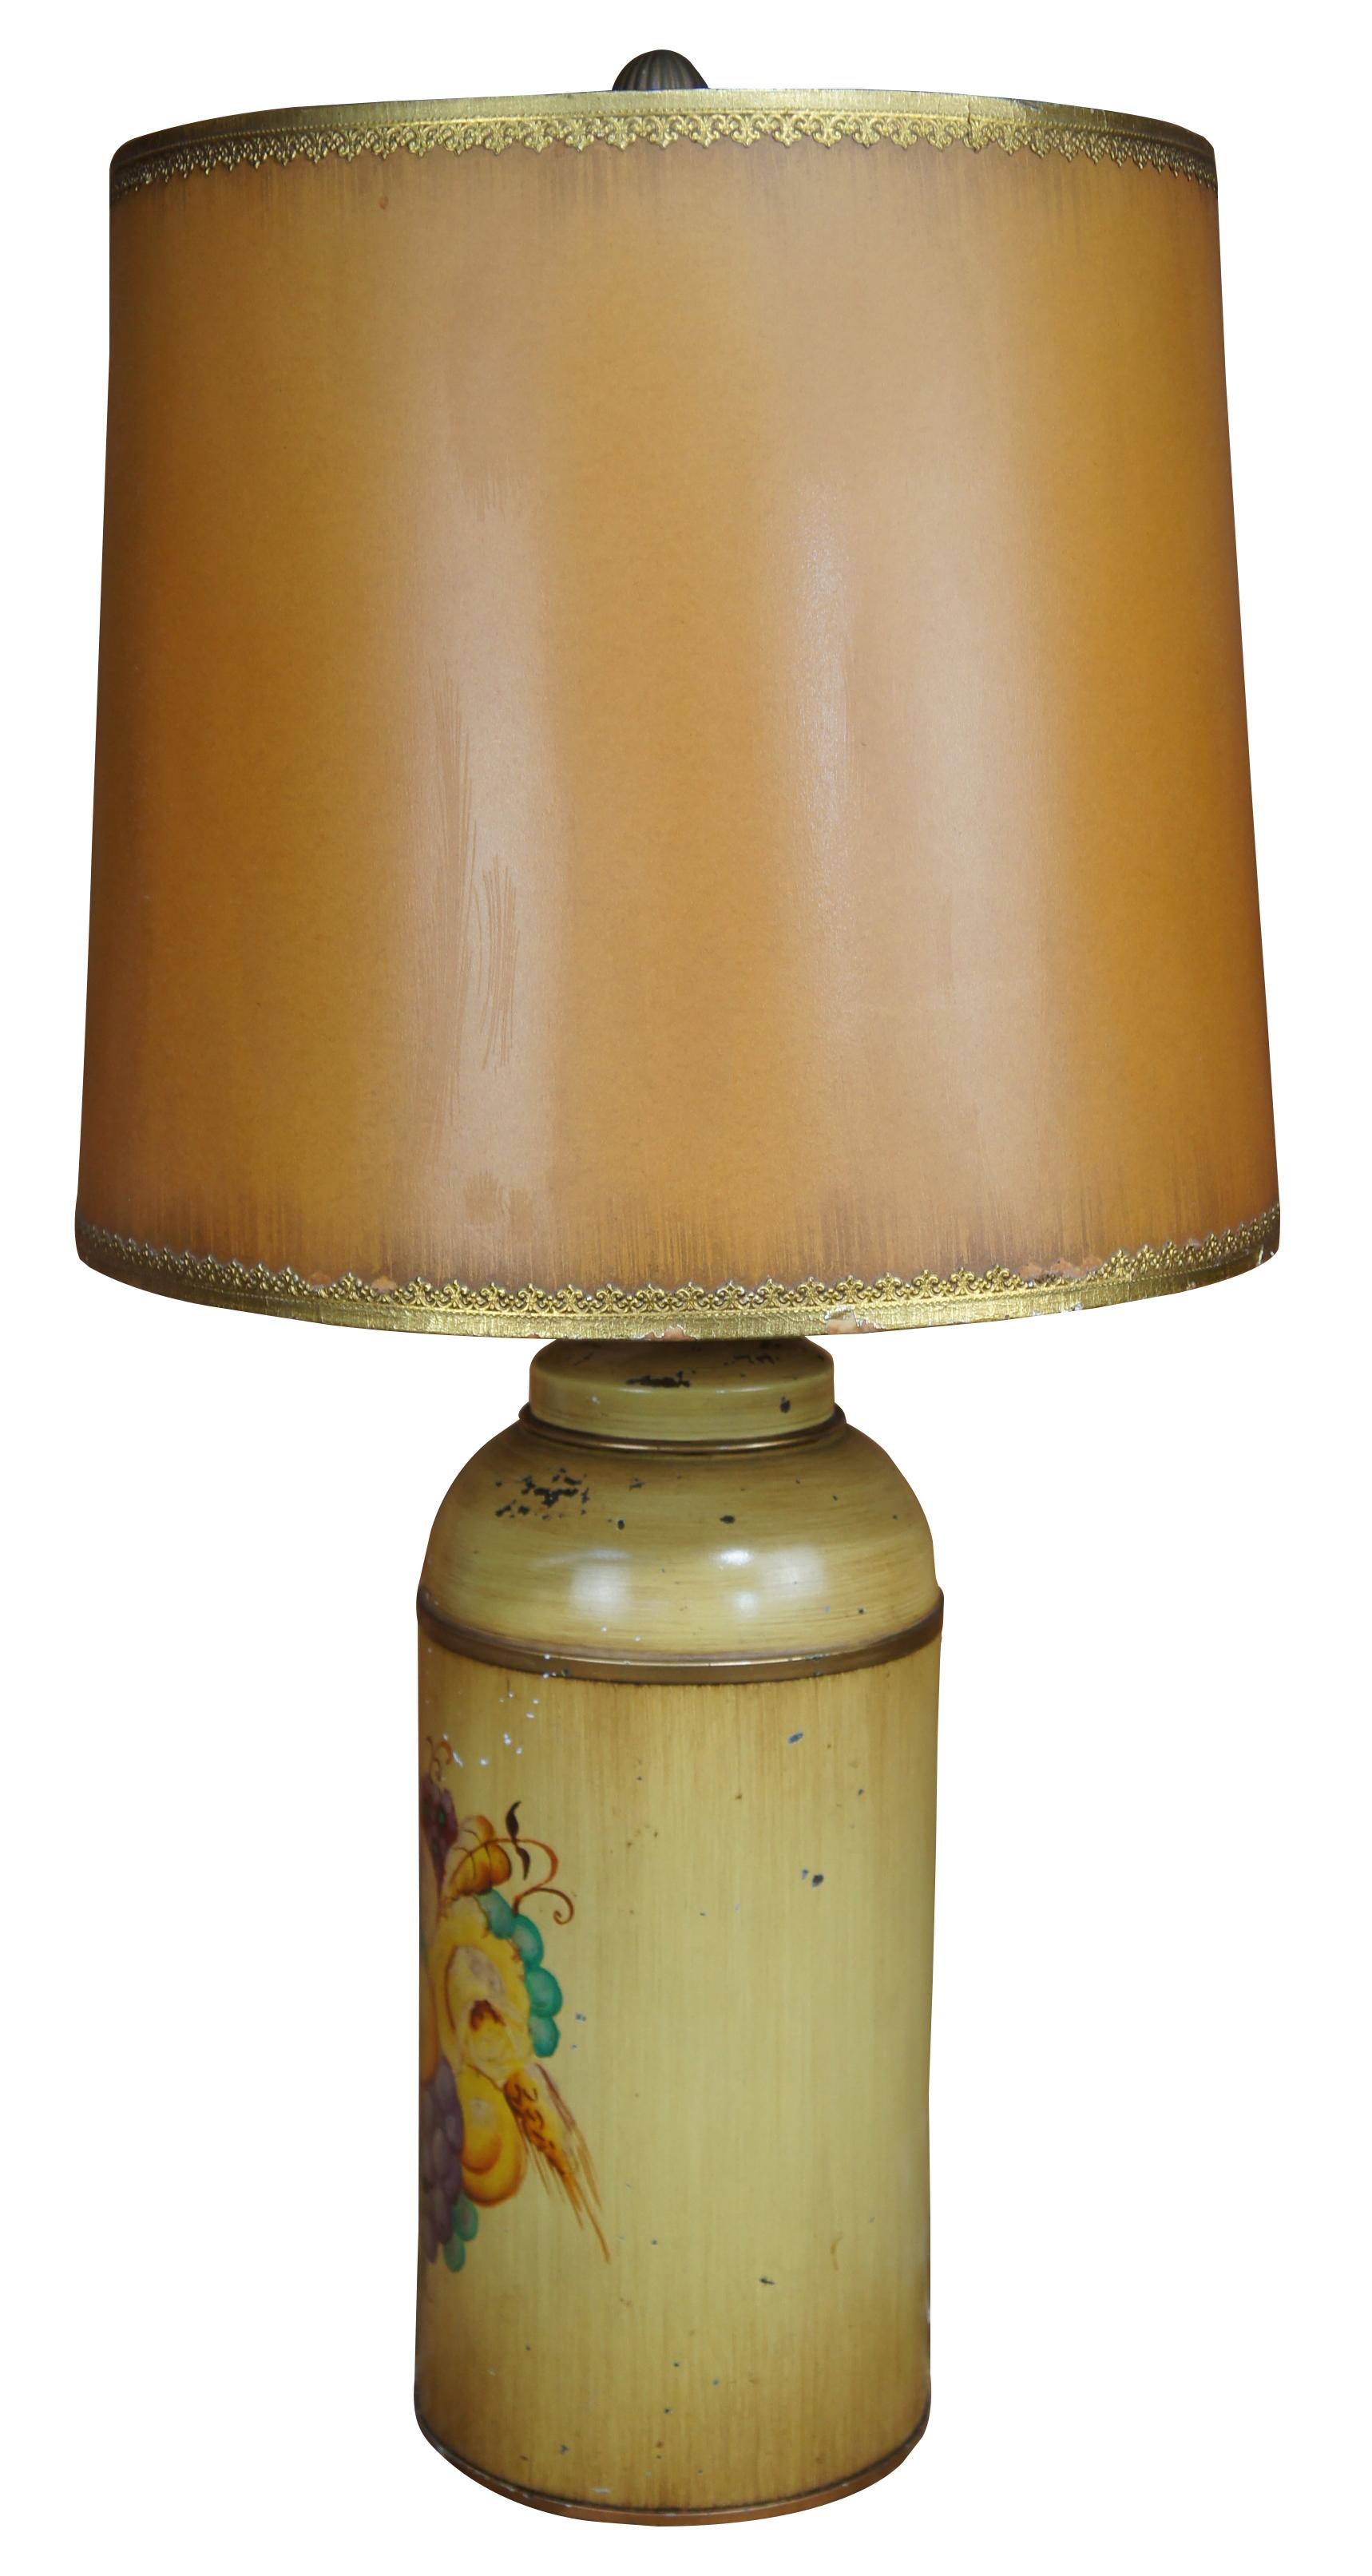 Mitte des 20. Jahrhunderts bemalte Kanisterlampe. Der gelb lackierte Korpus zeigt ein Obststillleben auf der Vorderseite, der Schirm ist tonnenförmig und mit Verzierungen versehen. 

Maße:6,25